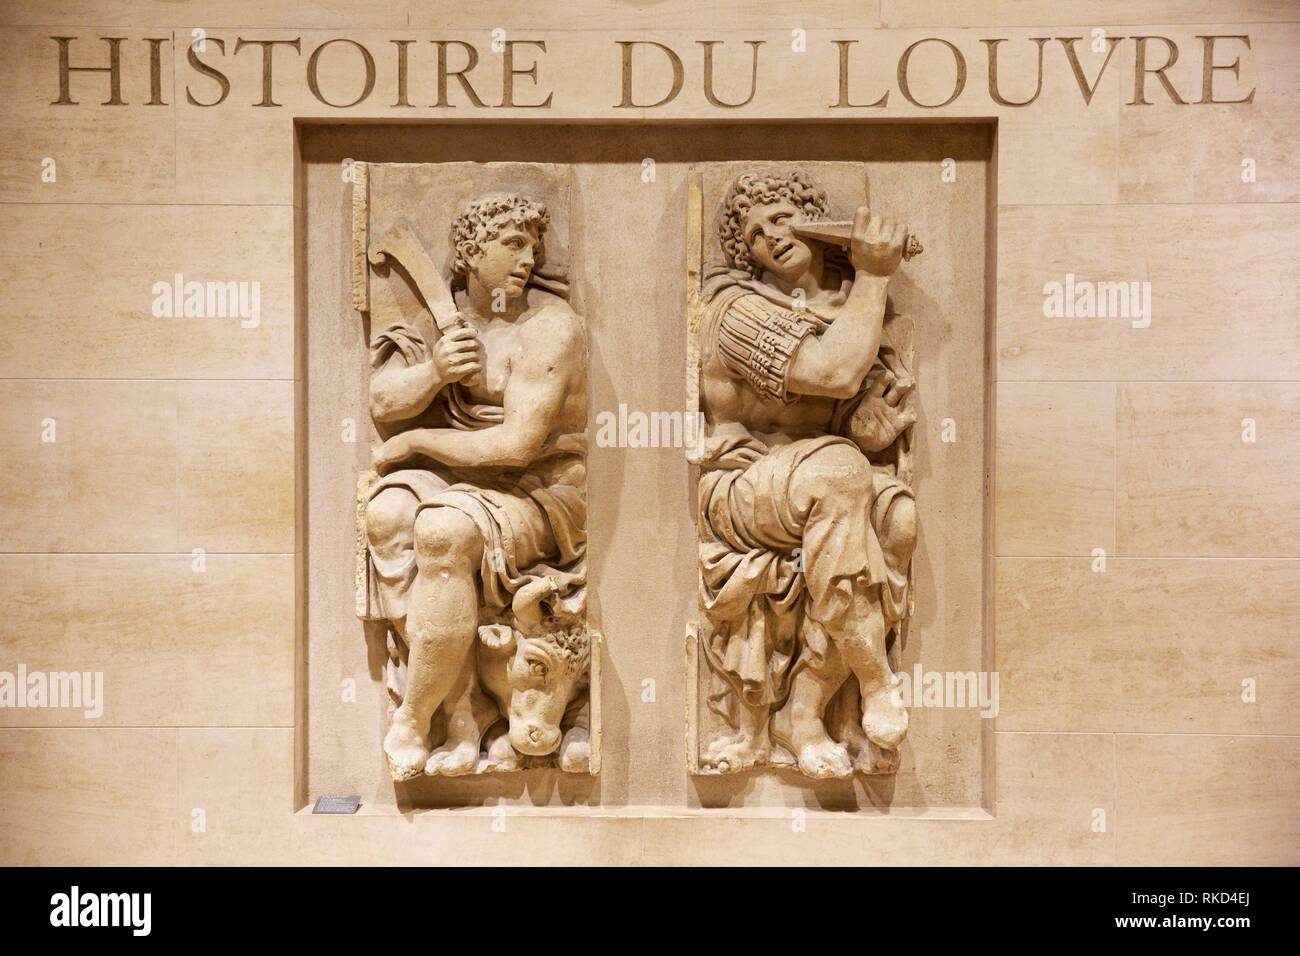 '''Histoire du Louvre'', Louvre Museum. Paris. France Stock Photo